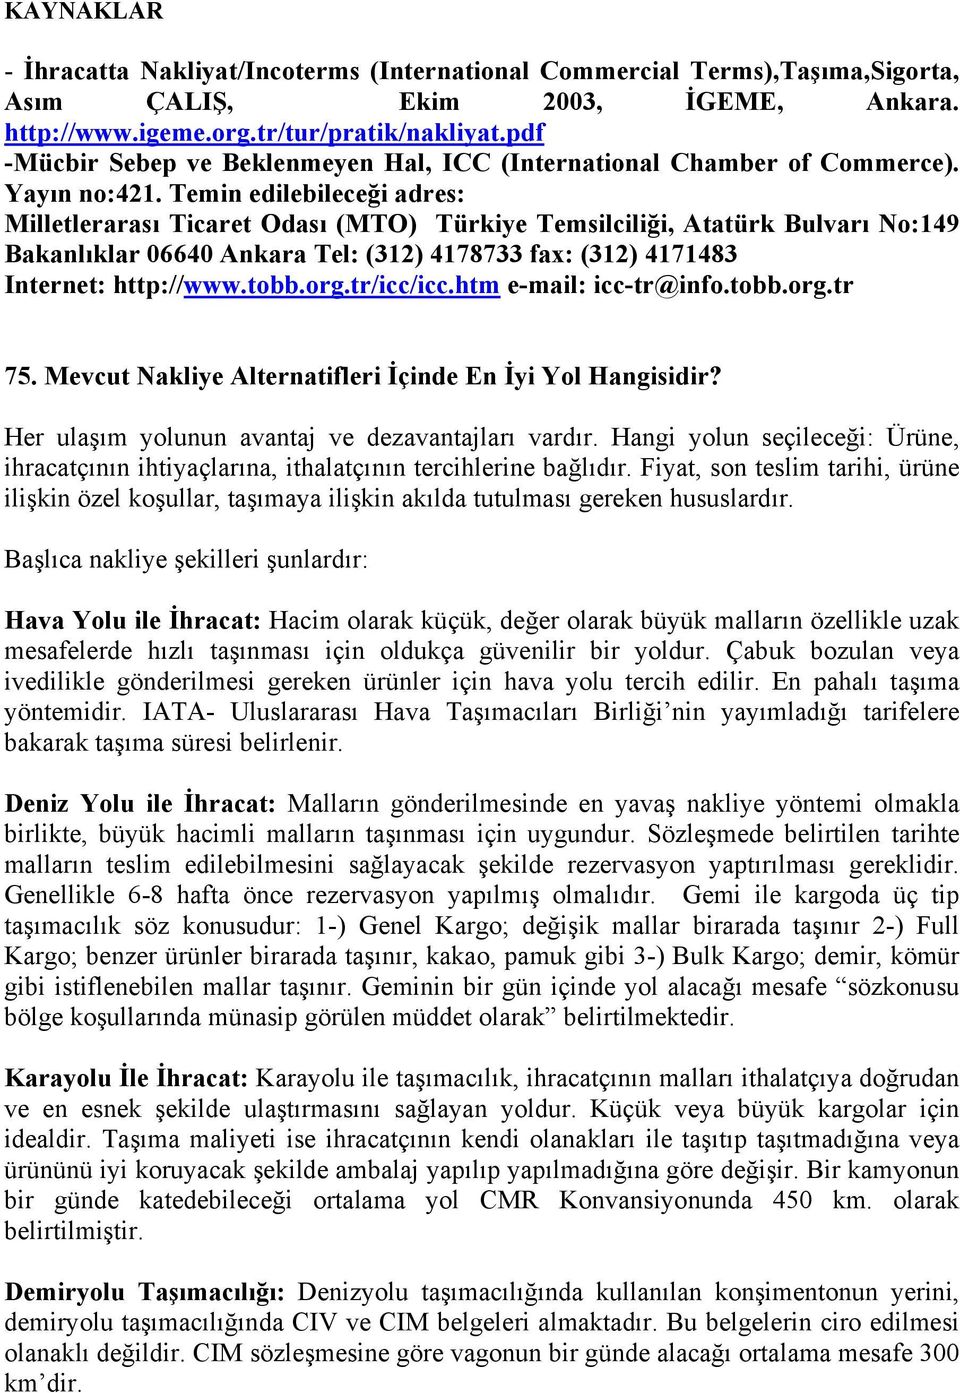 Temin edilebileceği adres: Milletlerarası Ticaret Odası (MTO) Türkiye Temsilciliği, Atatürk Bulvarı No:149 Bakanlıklar 06640 Ankara Tel: (312) 4178733 fax: (312) 4171483 Internet: http://www.tobb.org.